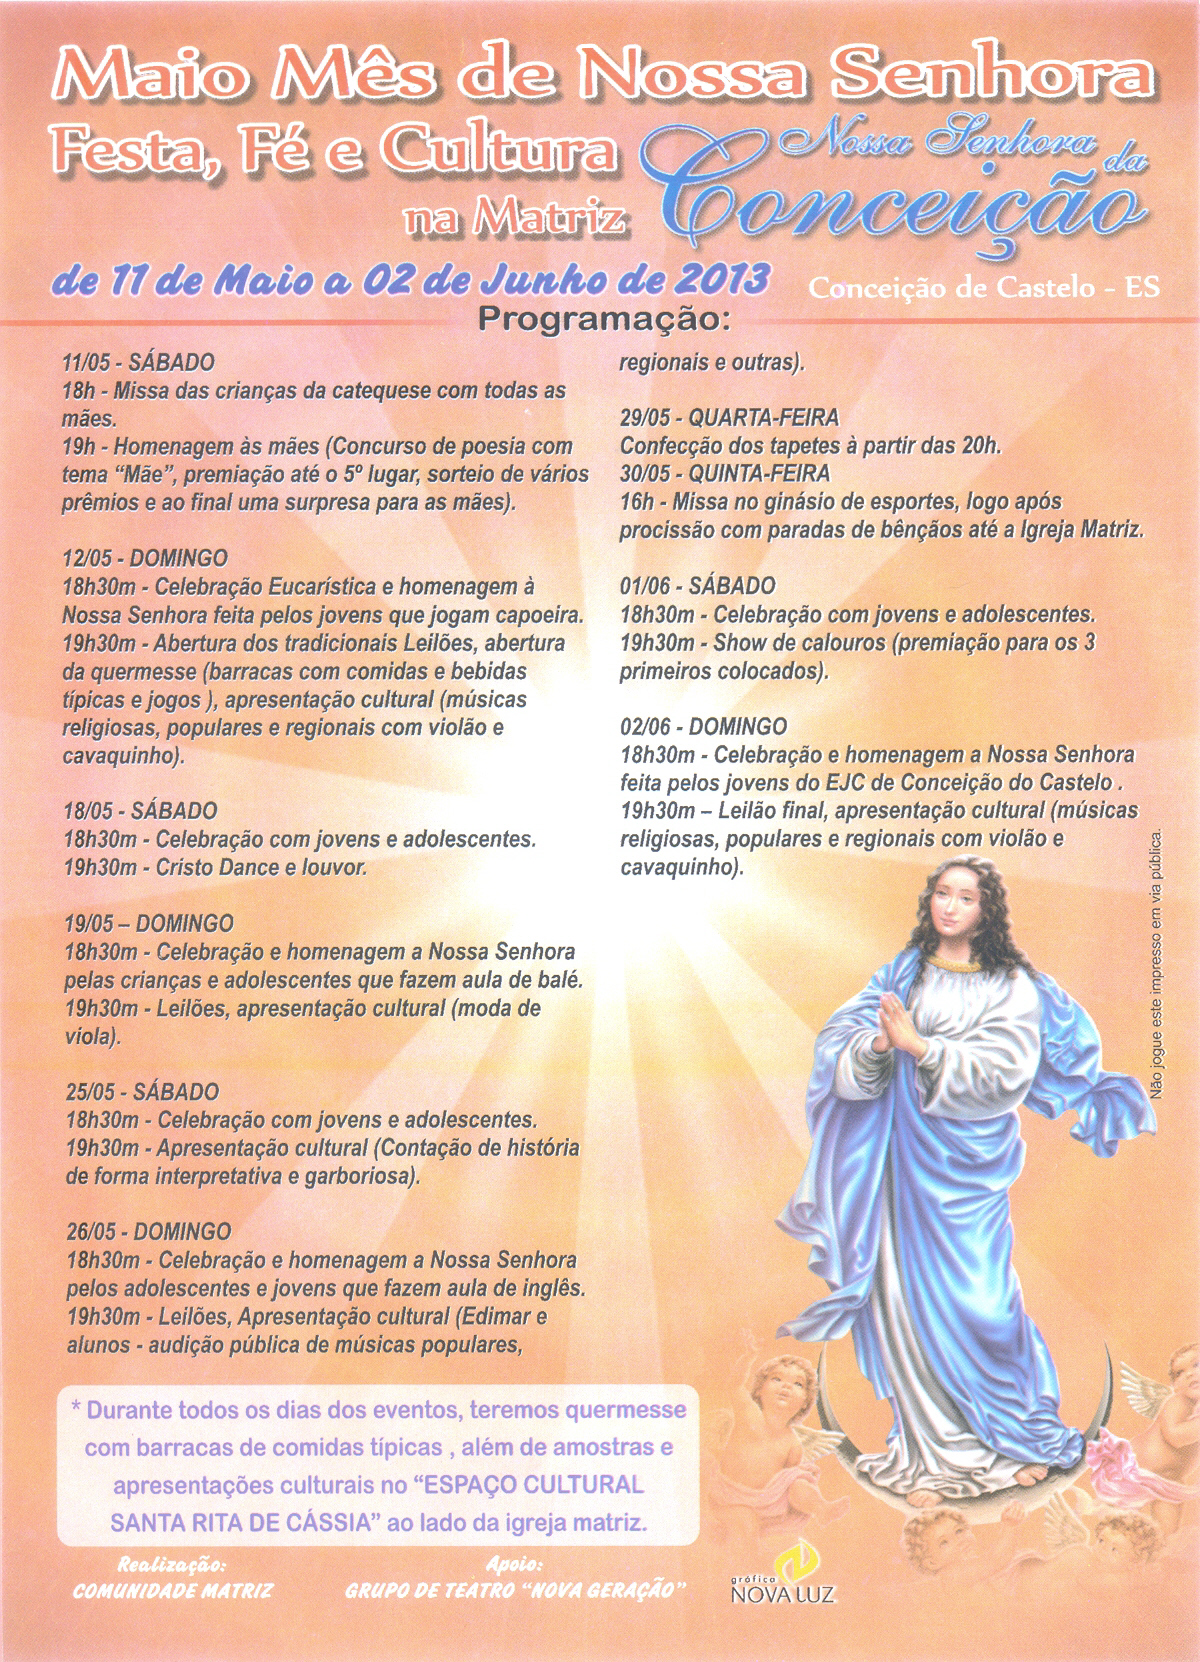 Igreja Católica celebra o mês de comemoração a Nossa Senhora da Conceição